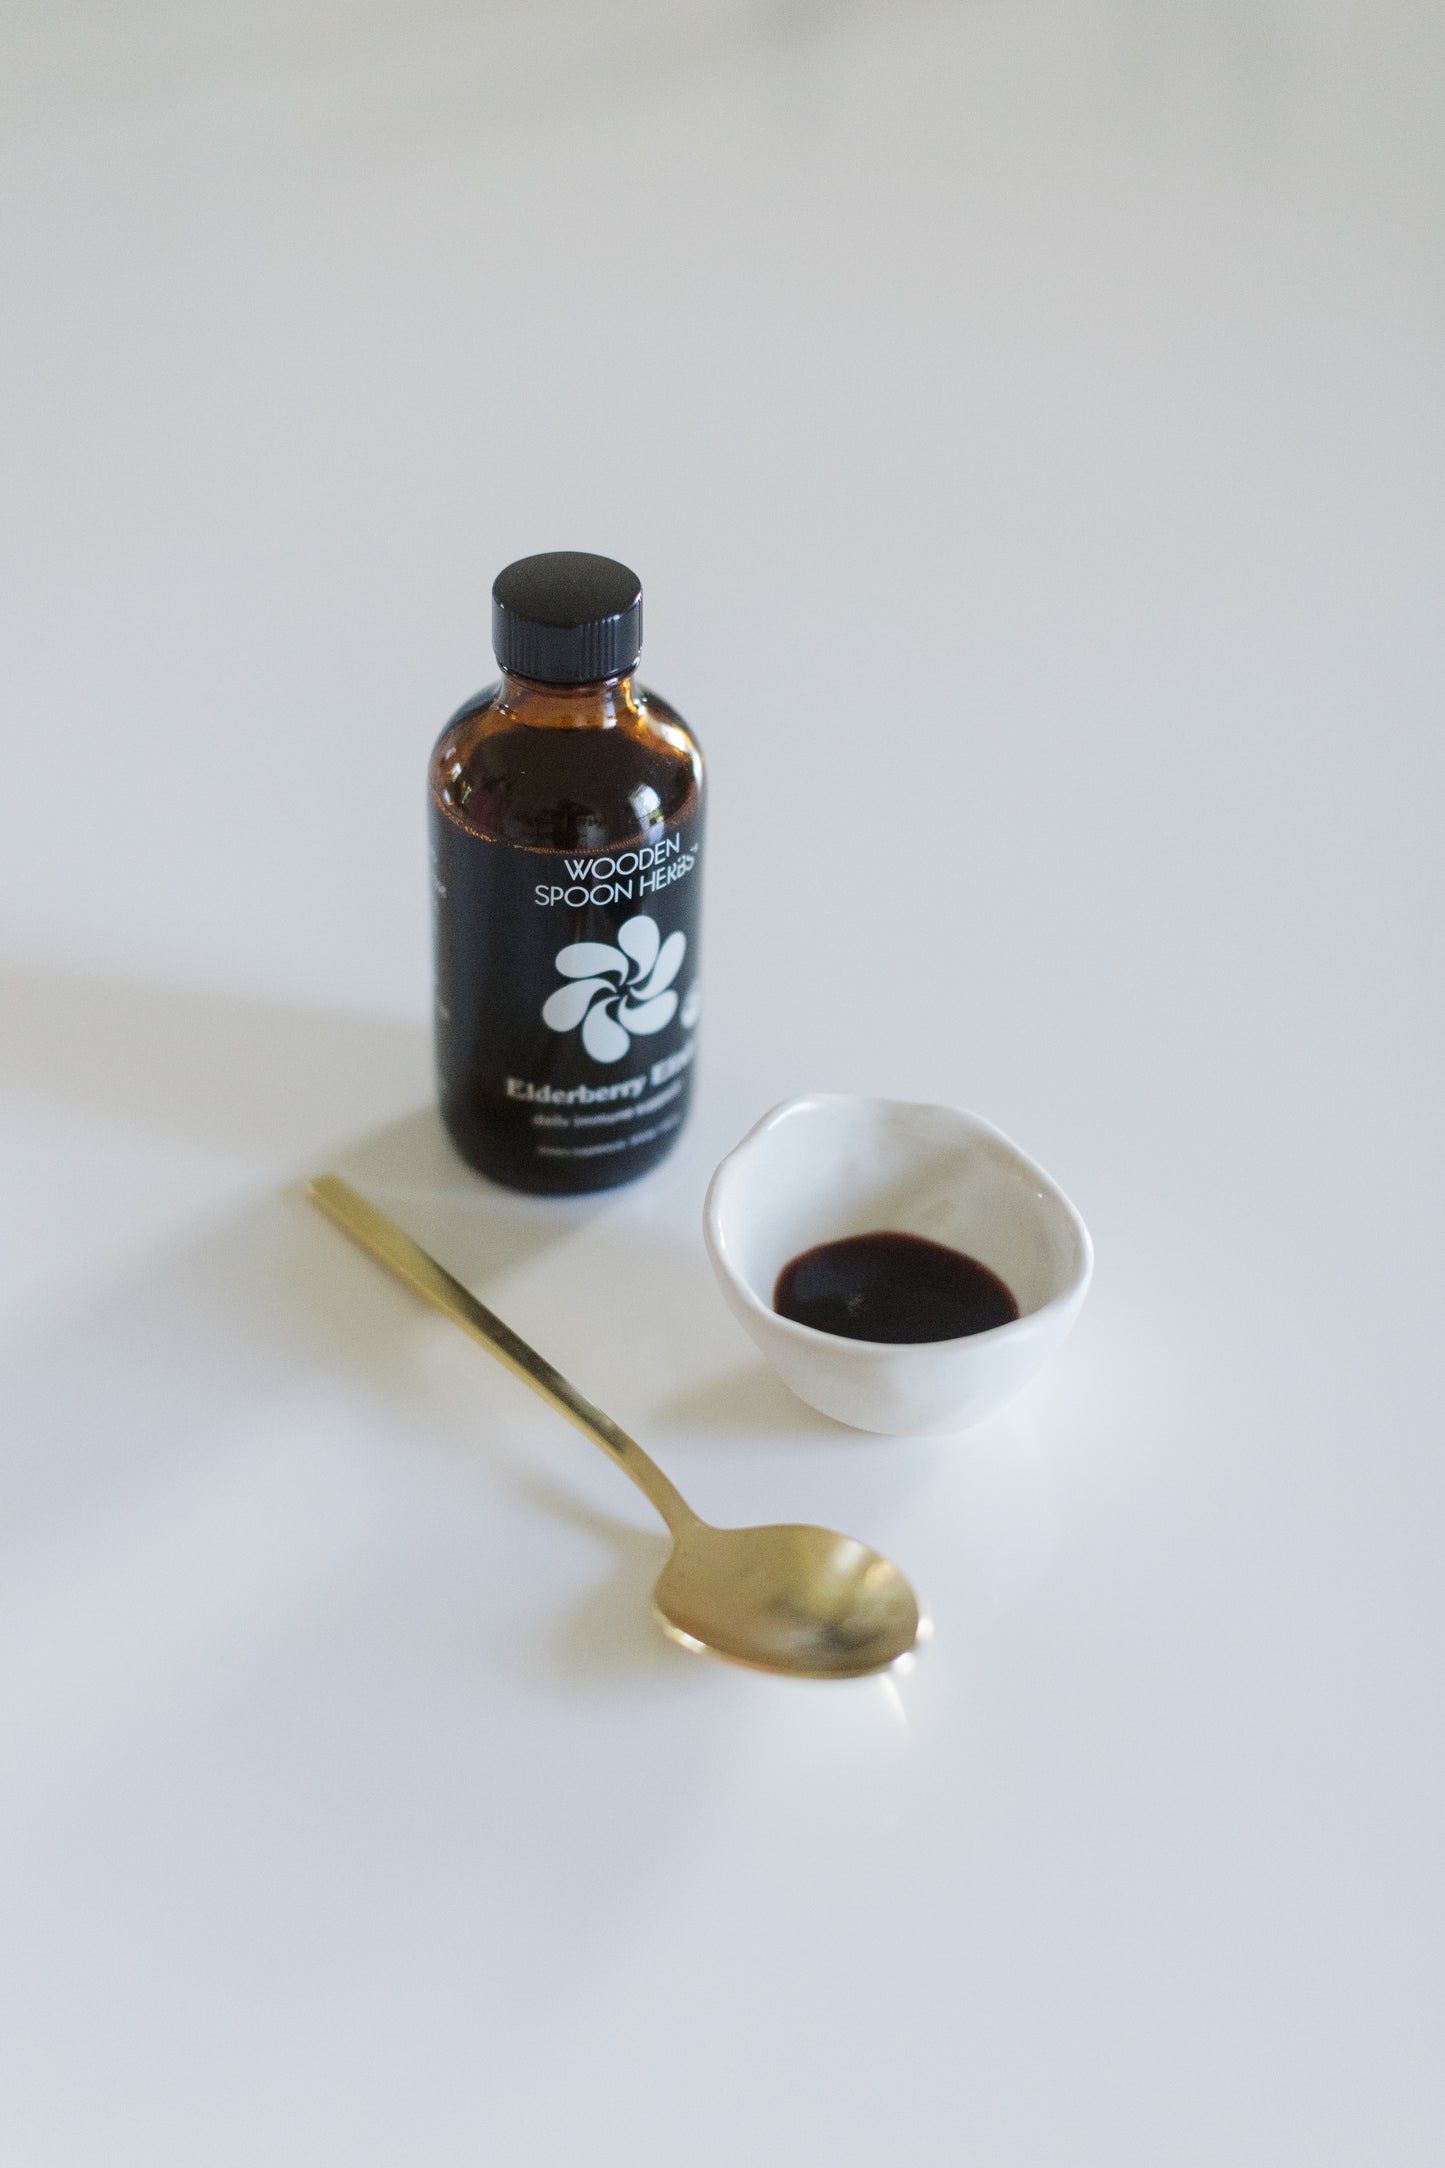 A bottle of Elderberry Elixir by Wooden Spoon Herbs sitting on a table.